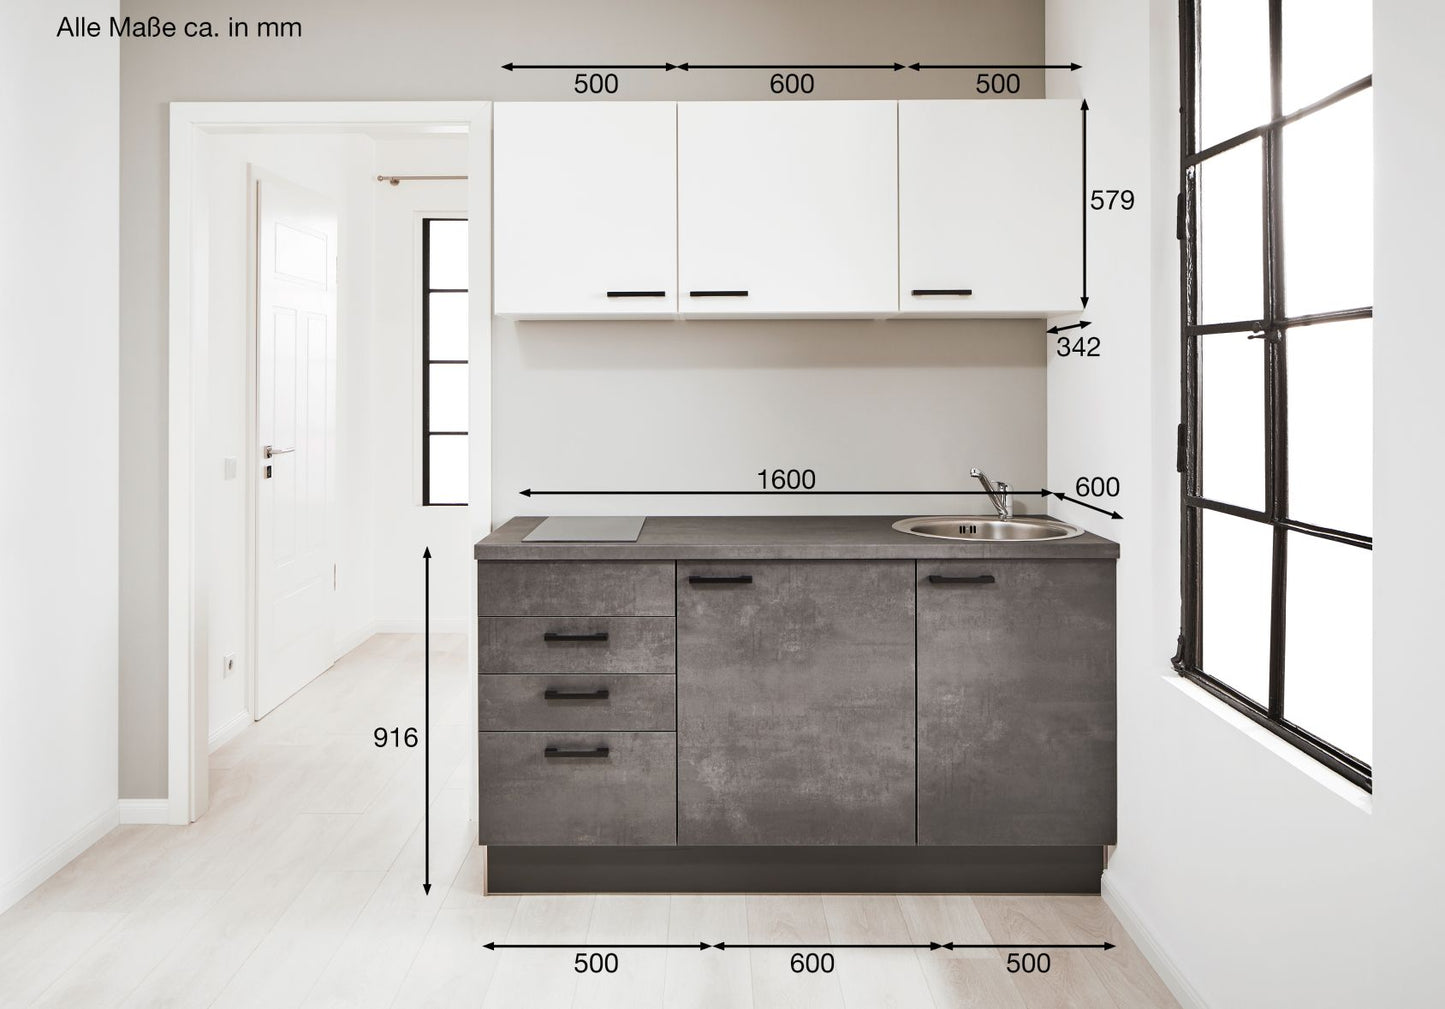 PKW 316001 Küchenzeile 160 cm, Schränke in Weiß, Beton Grafitgrau